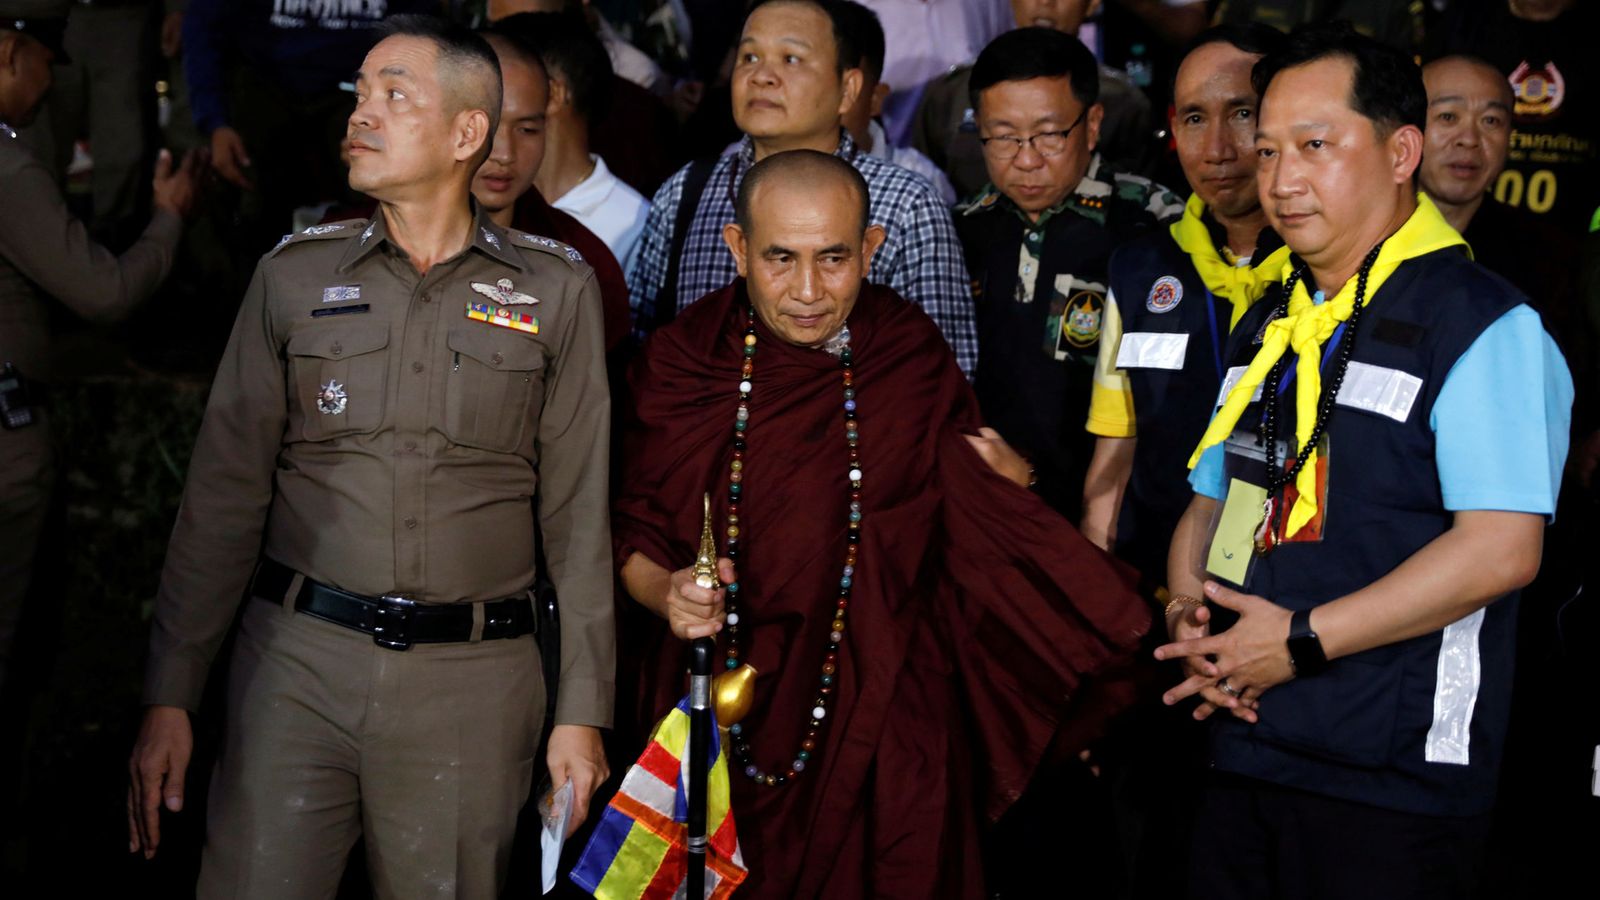 Foto: El monje Phra Khuva Boonchum, una celebridad en Tailandia, sale de la cueva de Tham Luang, el 4 de julio de 2018. (Reuters)